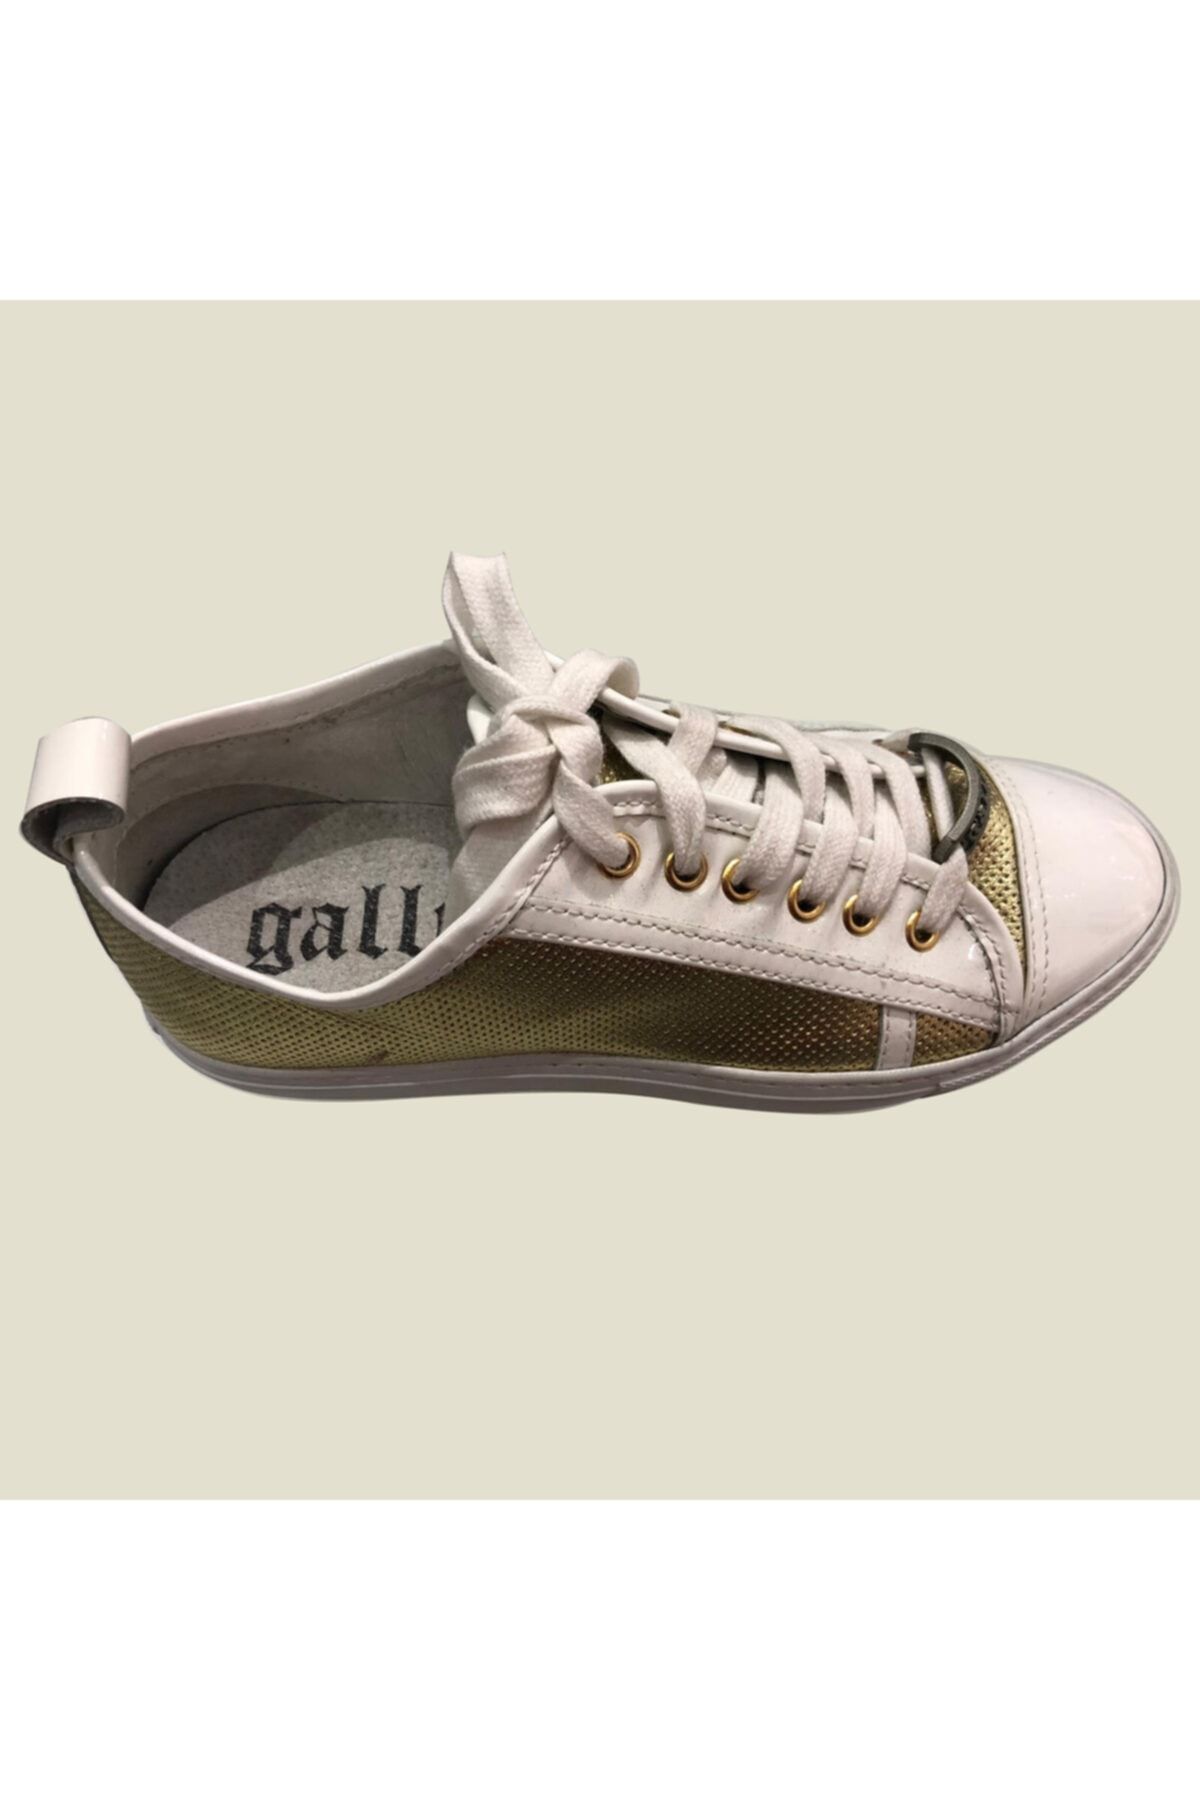 John Galliano Spor Ayakkabı Altın 8149